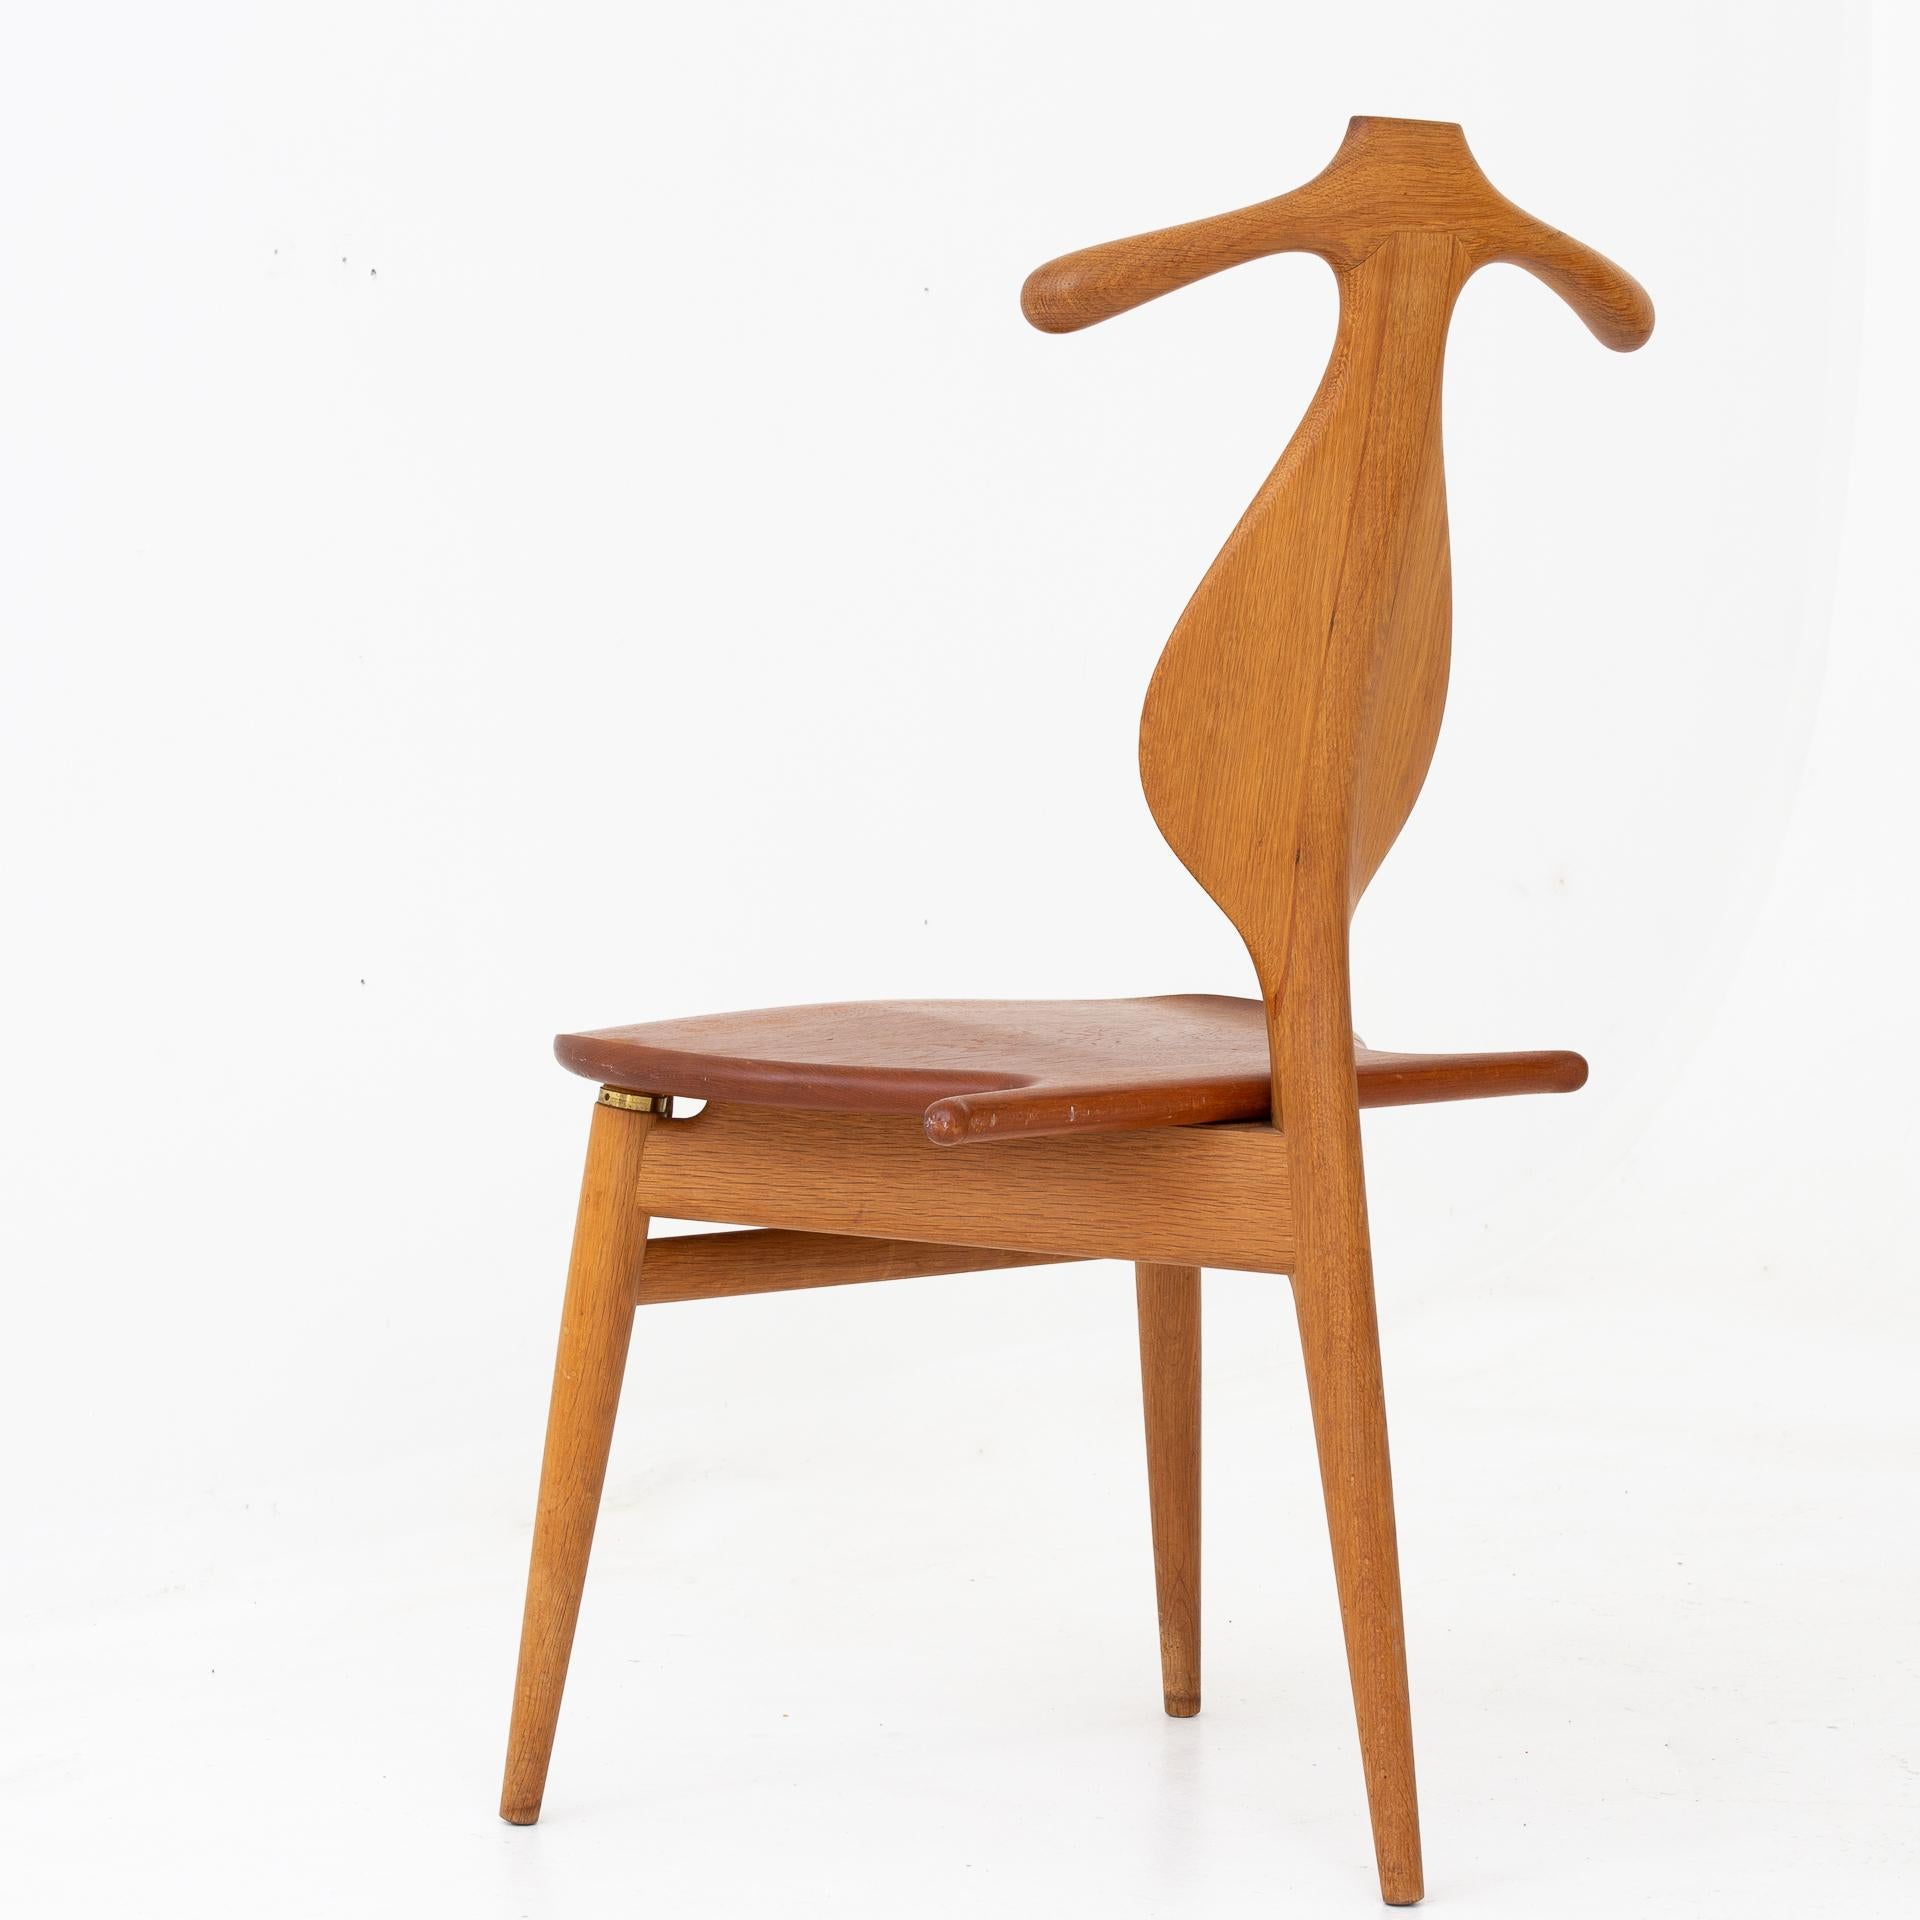 JH 540 - The Valet chair in oak and seat of teak. Design 1953. Maker Johannes Hansen.